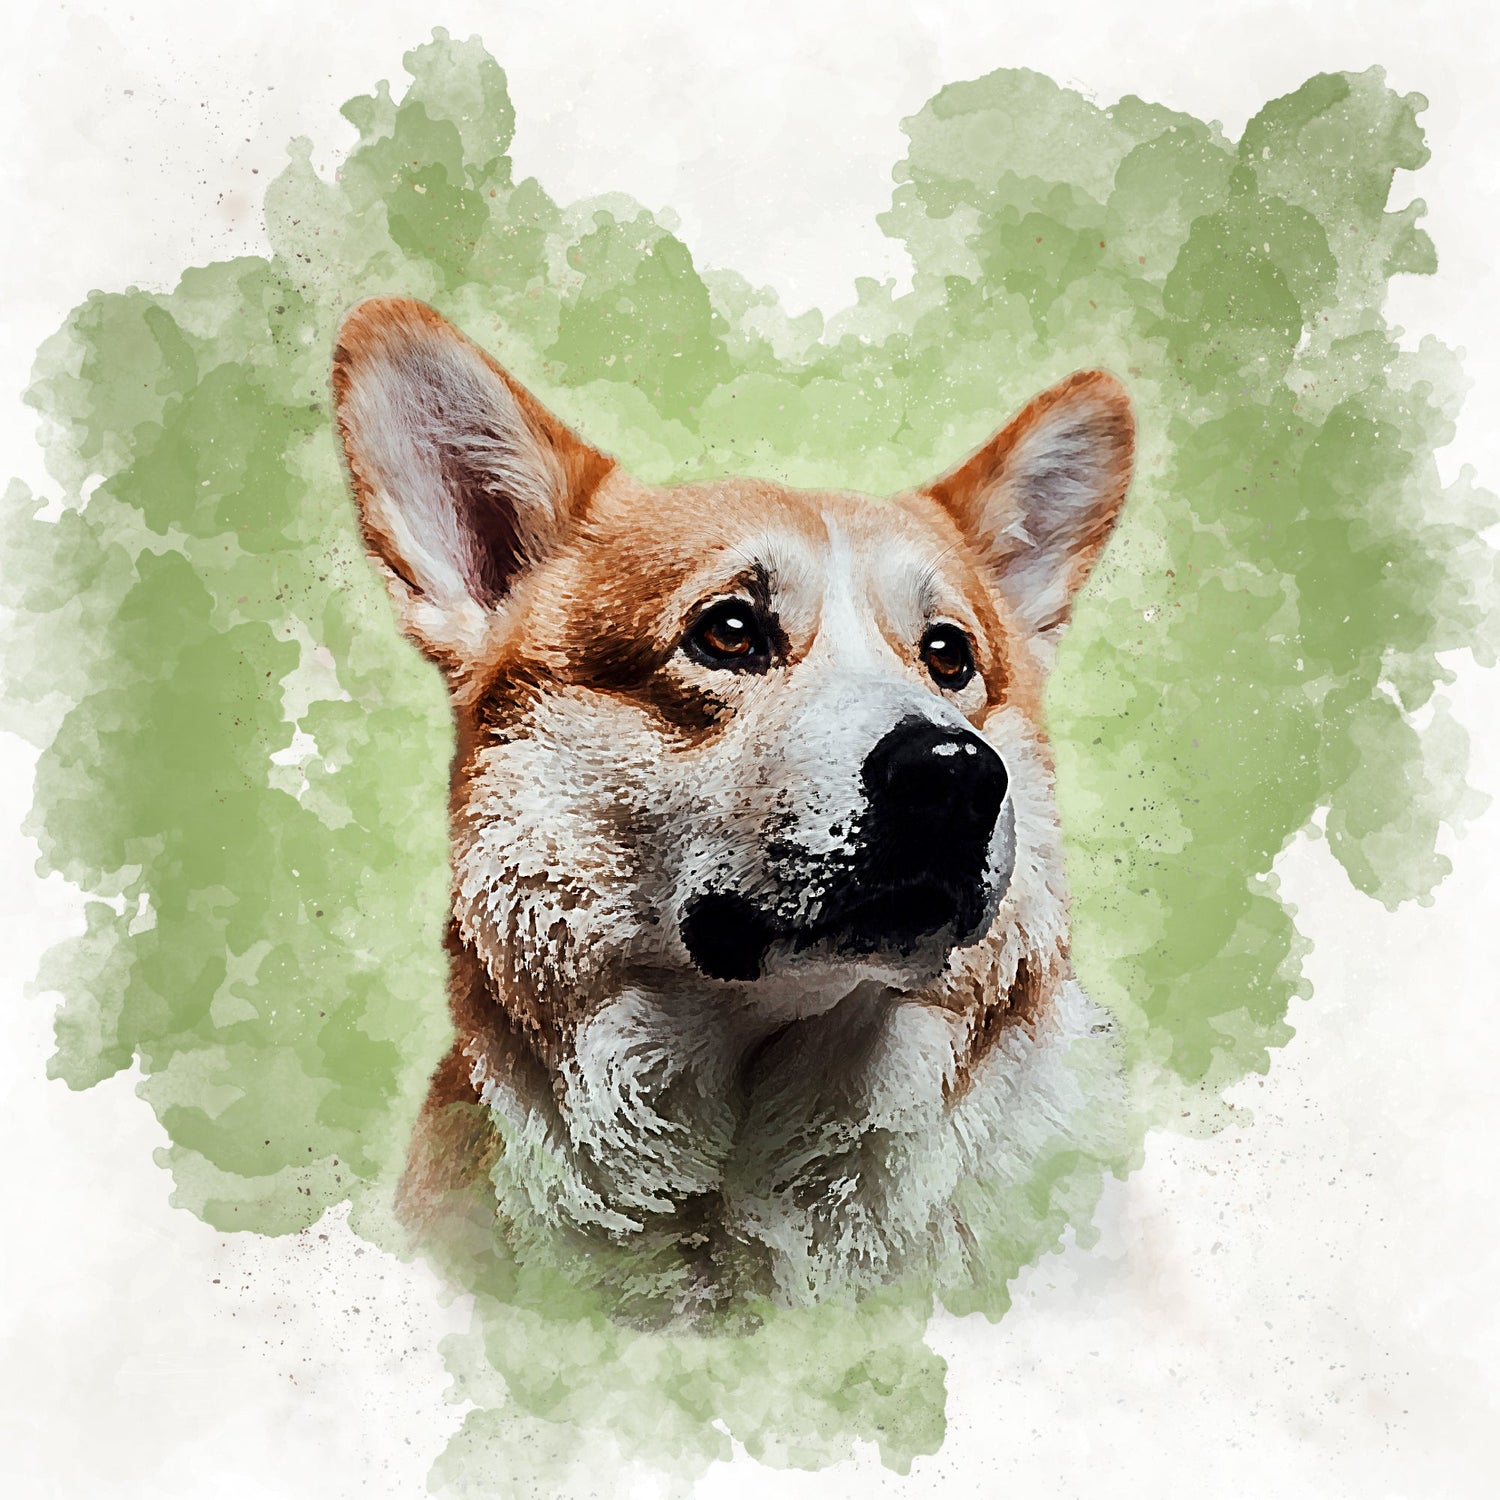 Canvas Prints - Custom Heart Watercolor Pet Portrait